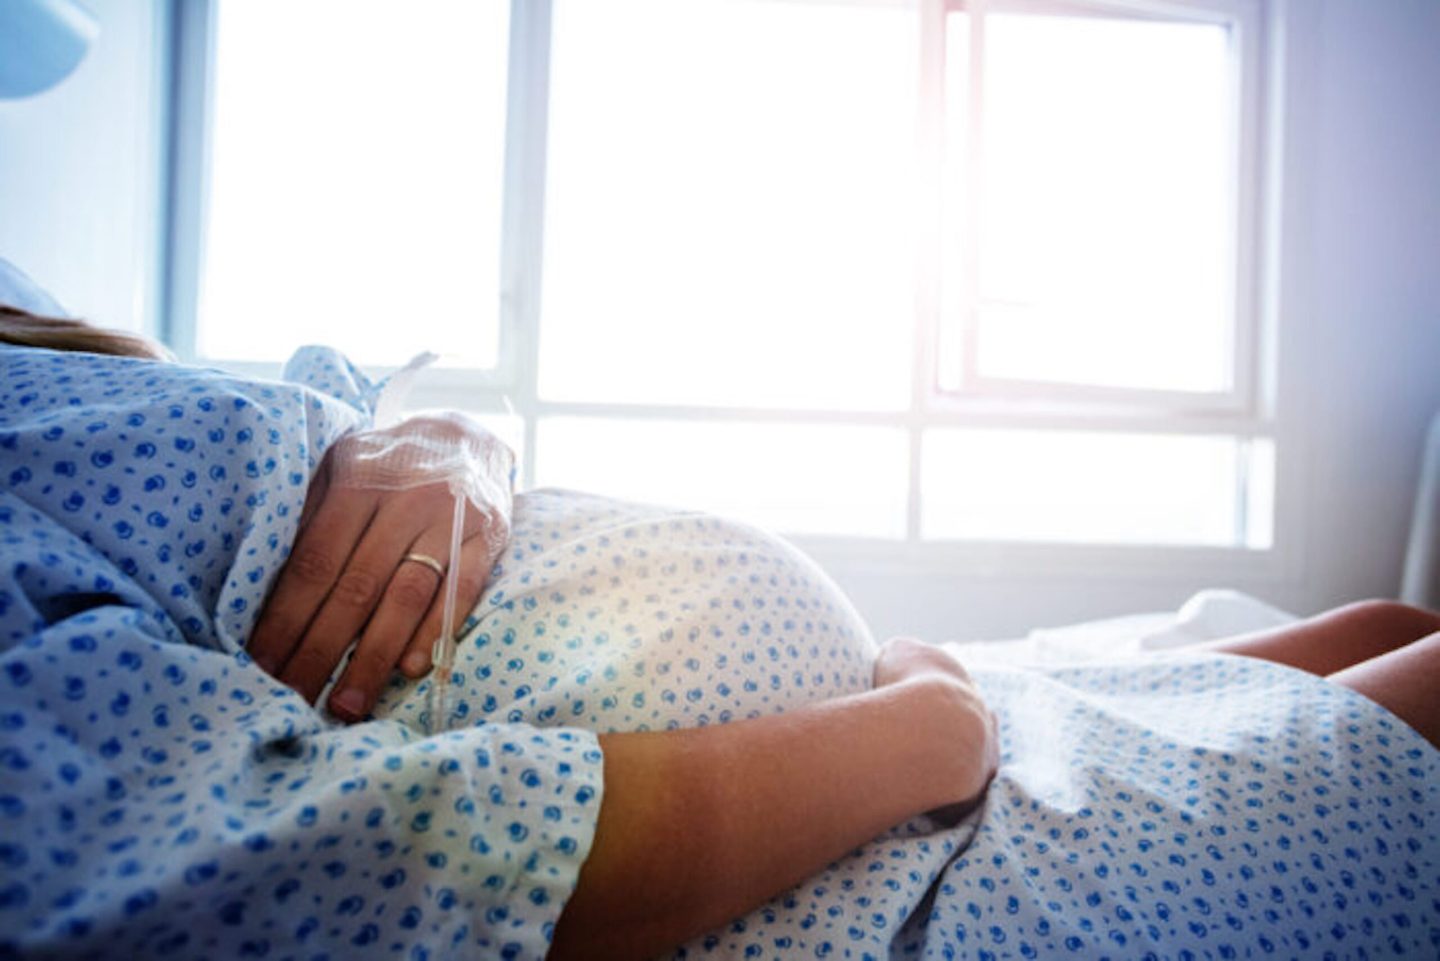 استخدام المواد الحاوية على فلور في أثناء الحمل يزيد من مخاطر السمنة لدى الأطفال